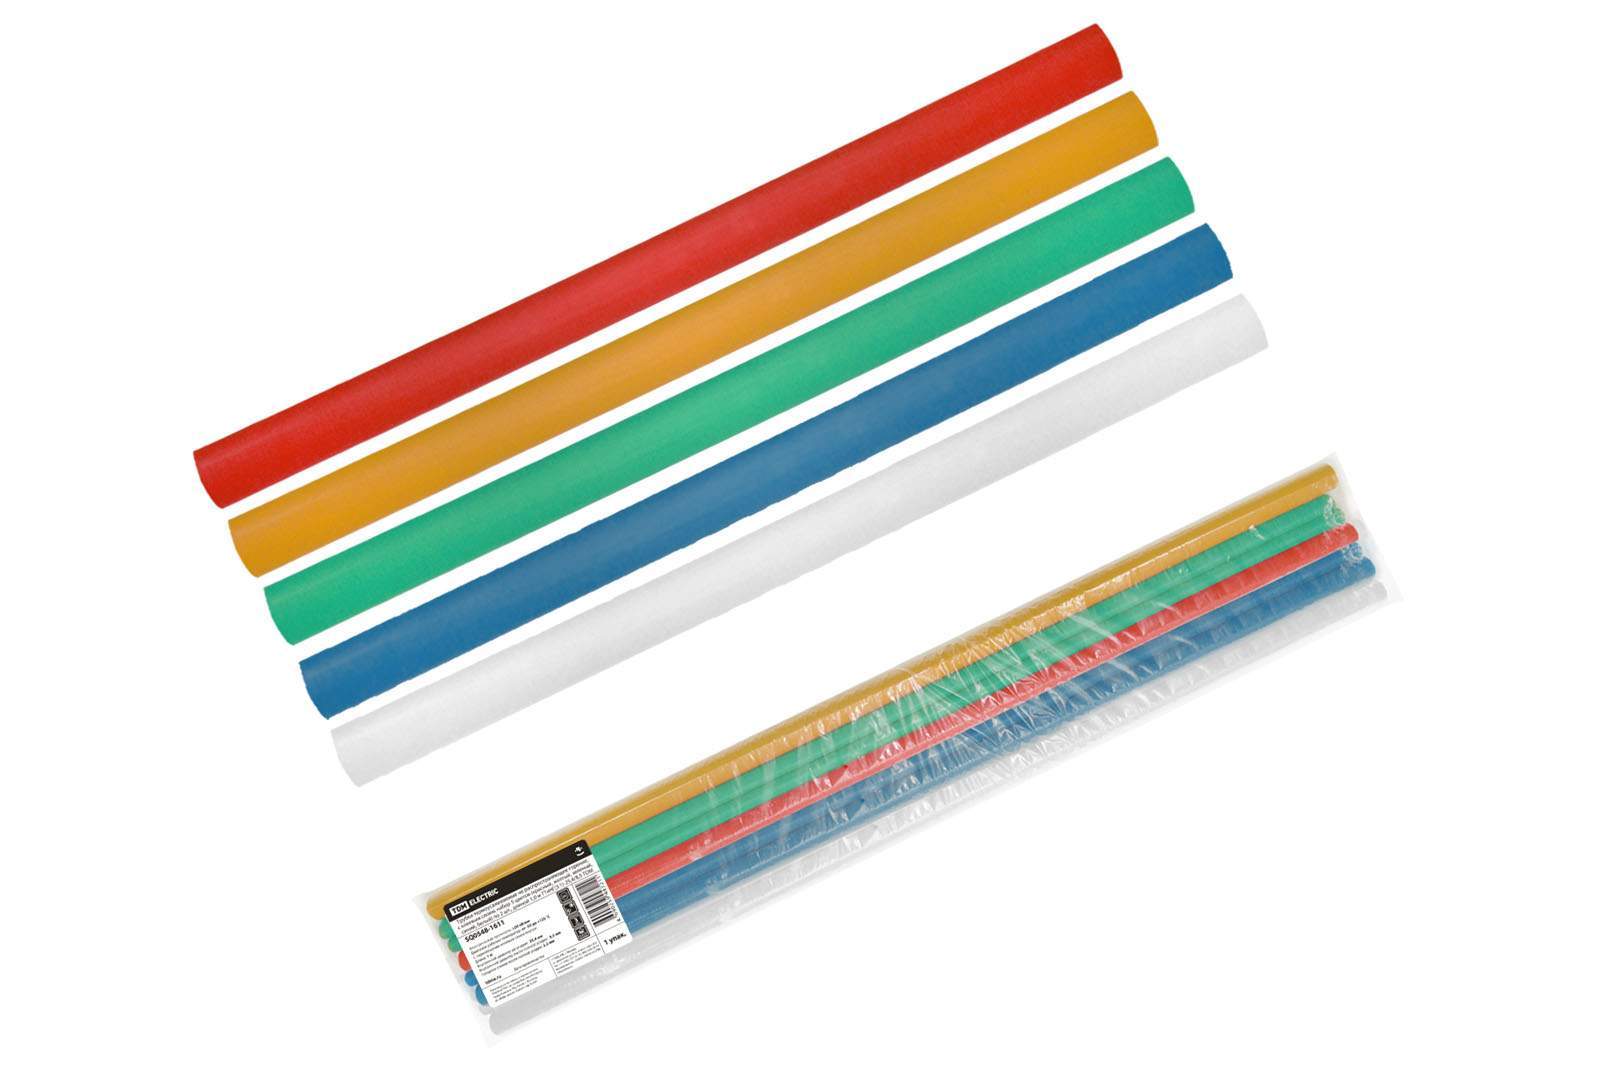 трубки термоусаживаемые, клеевые, набор 5 цветов по 2 шт. тткнг(3:1)-25,4/8,5 tdm от BTSprom.by